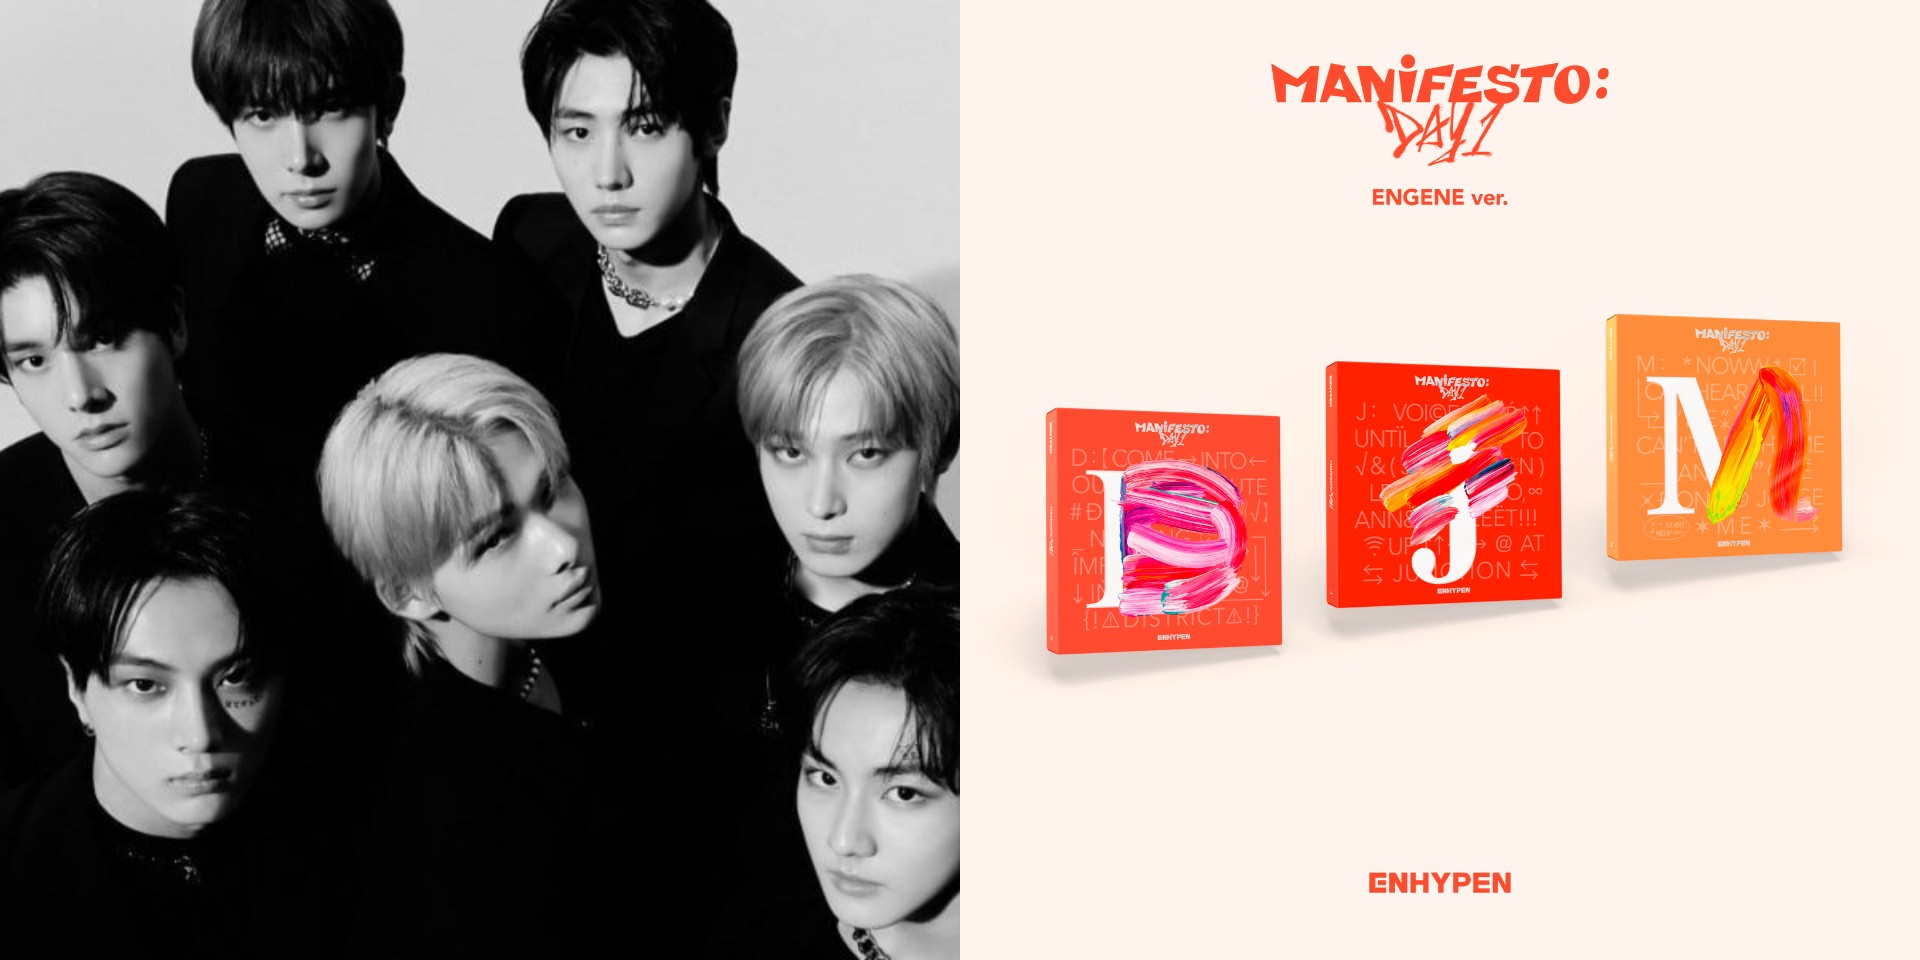 ENHYPEN to enter new era with third mini-album , 'MANIFESTO: DAY ONE